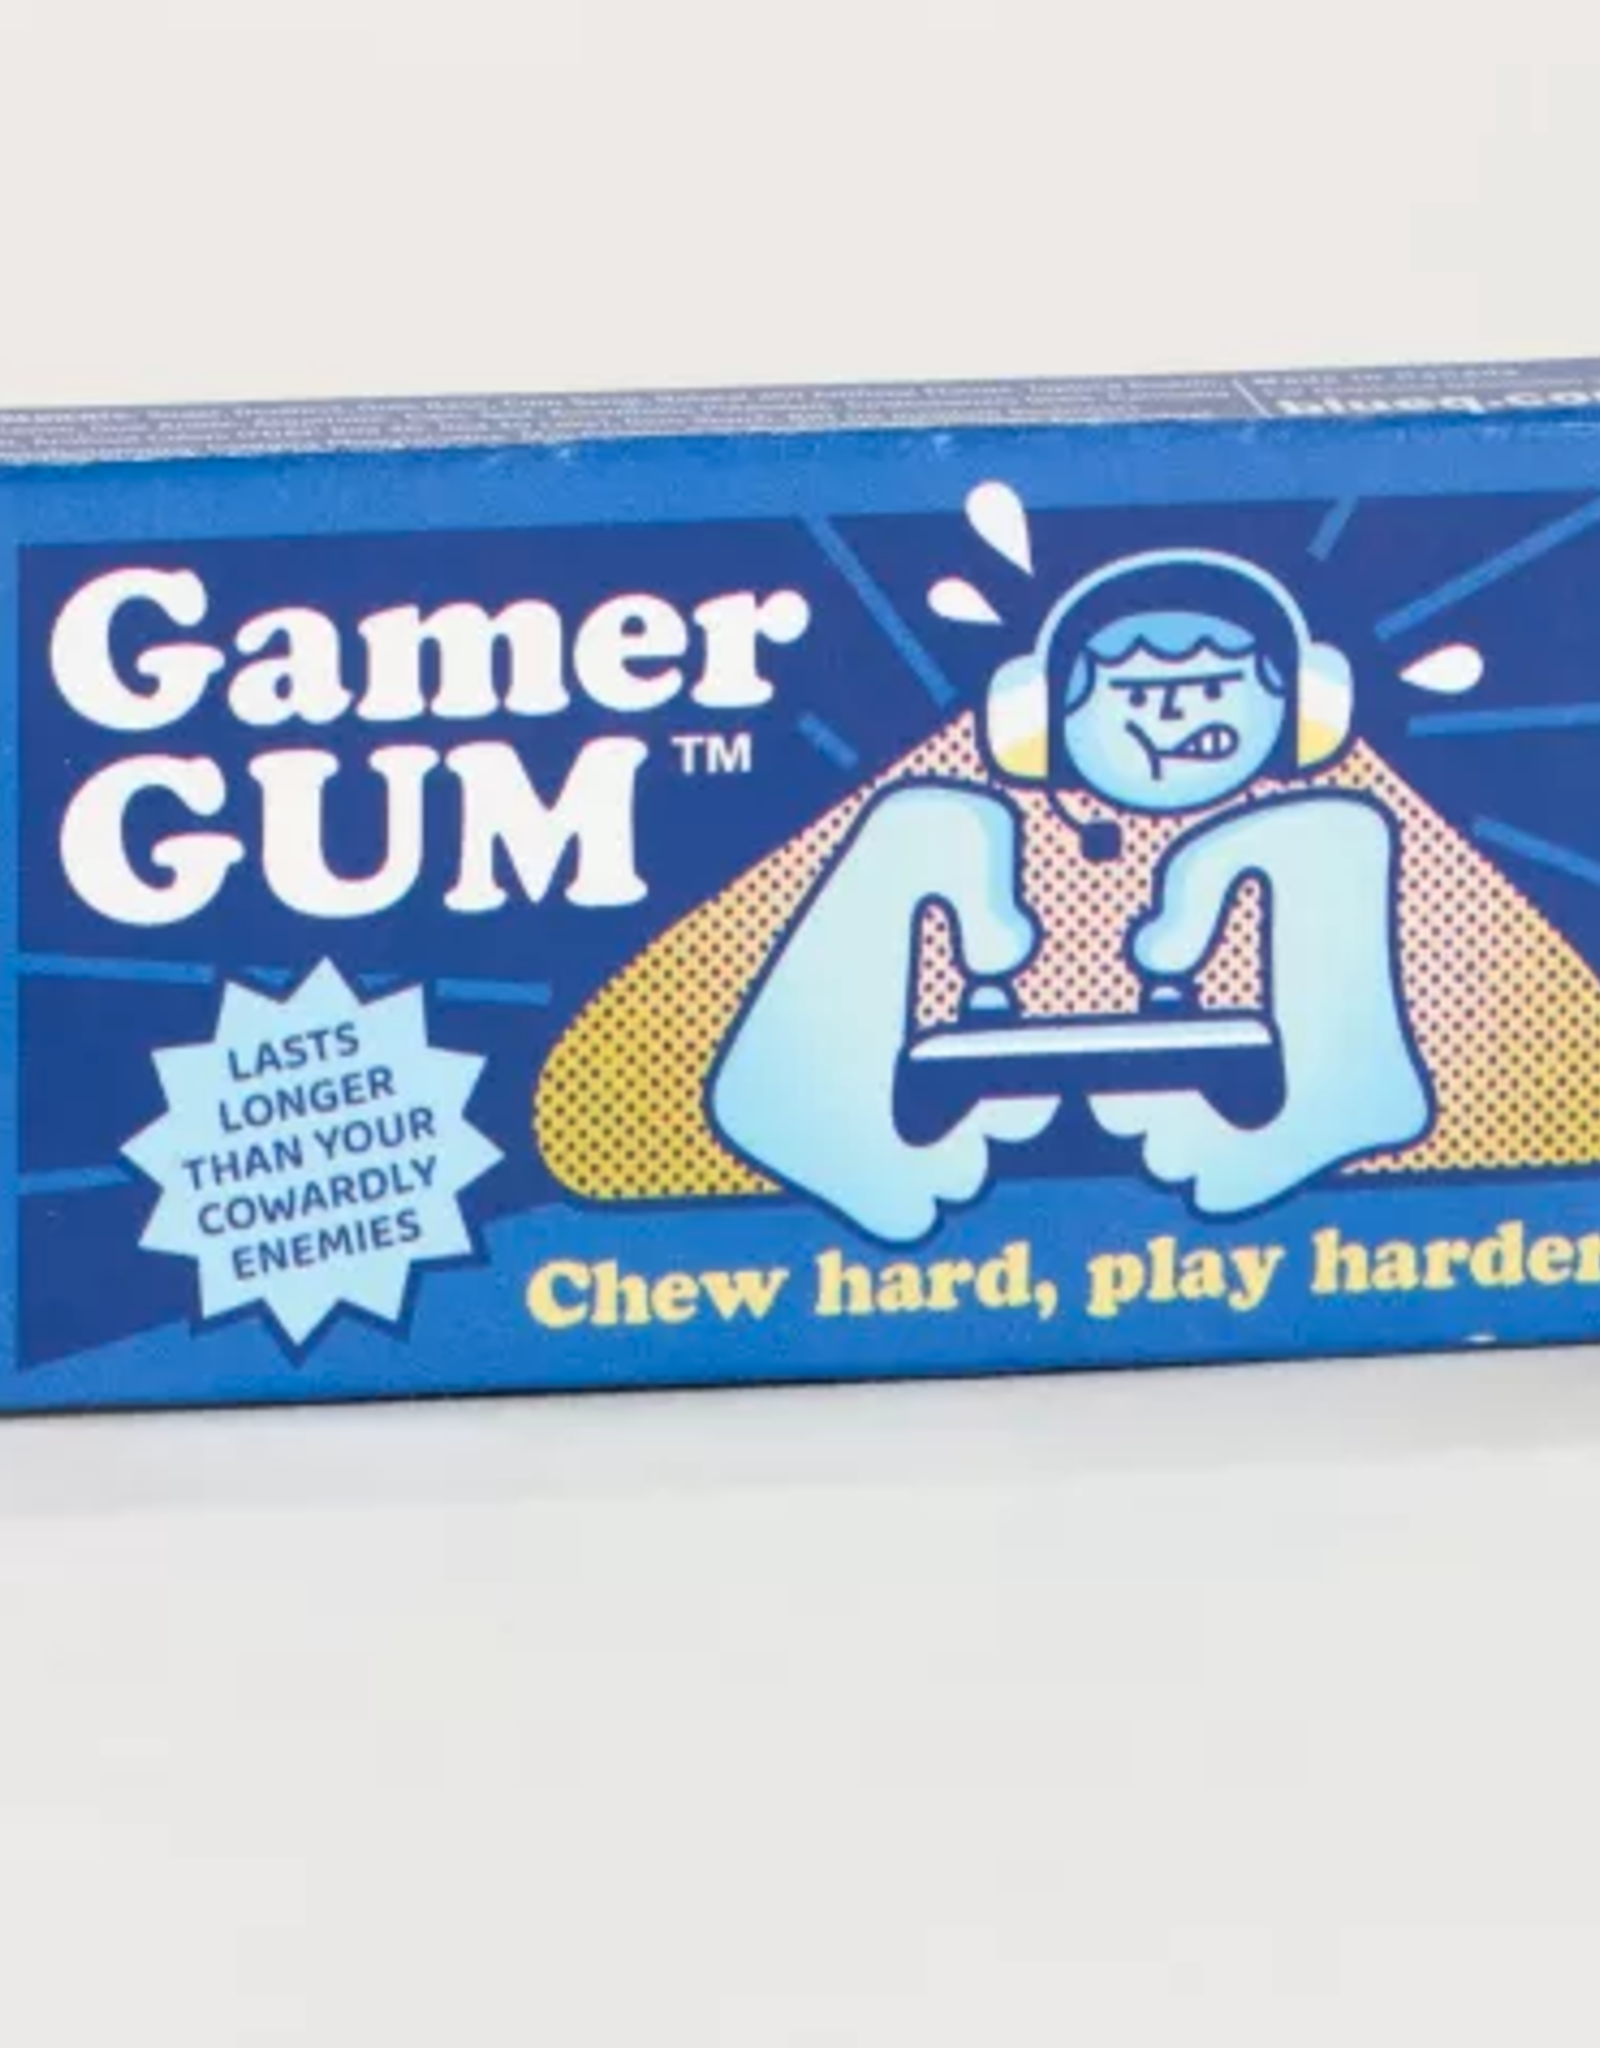 Blue Q Blue Q Gum Gamer Gum